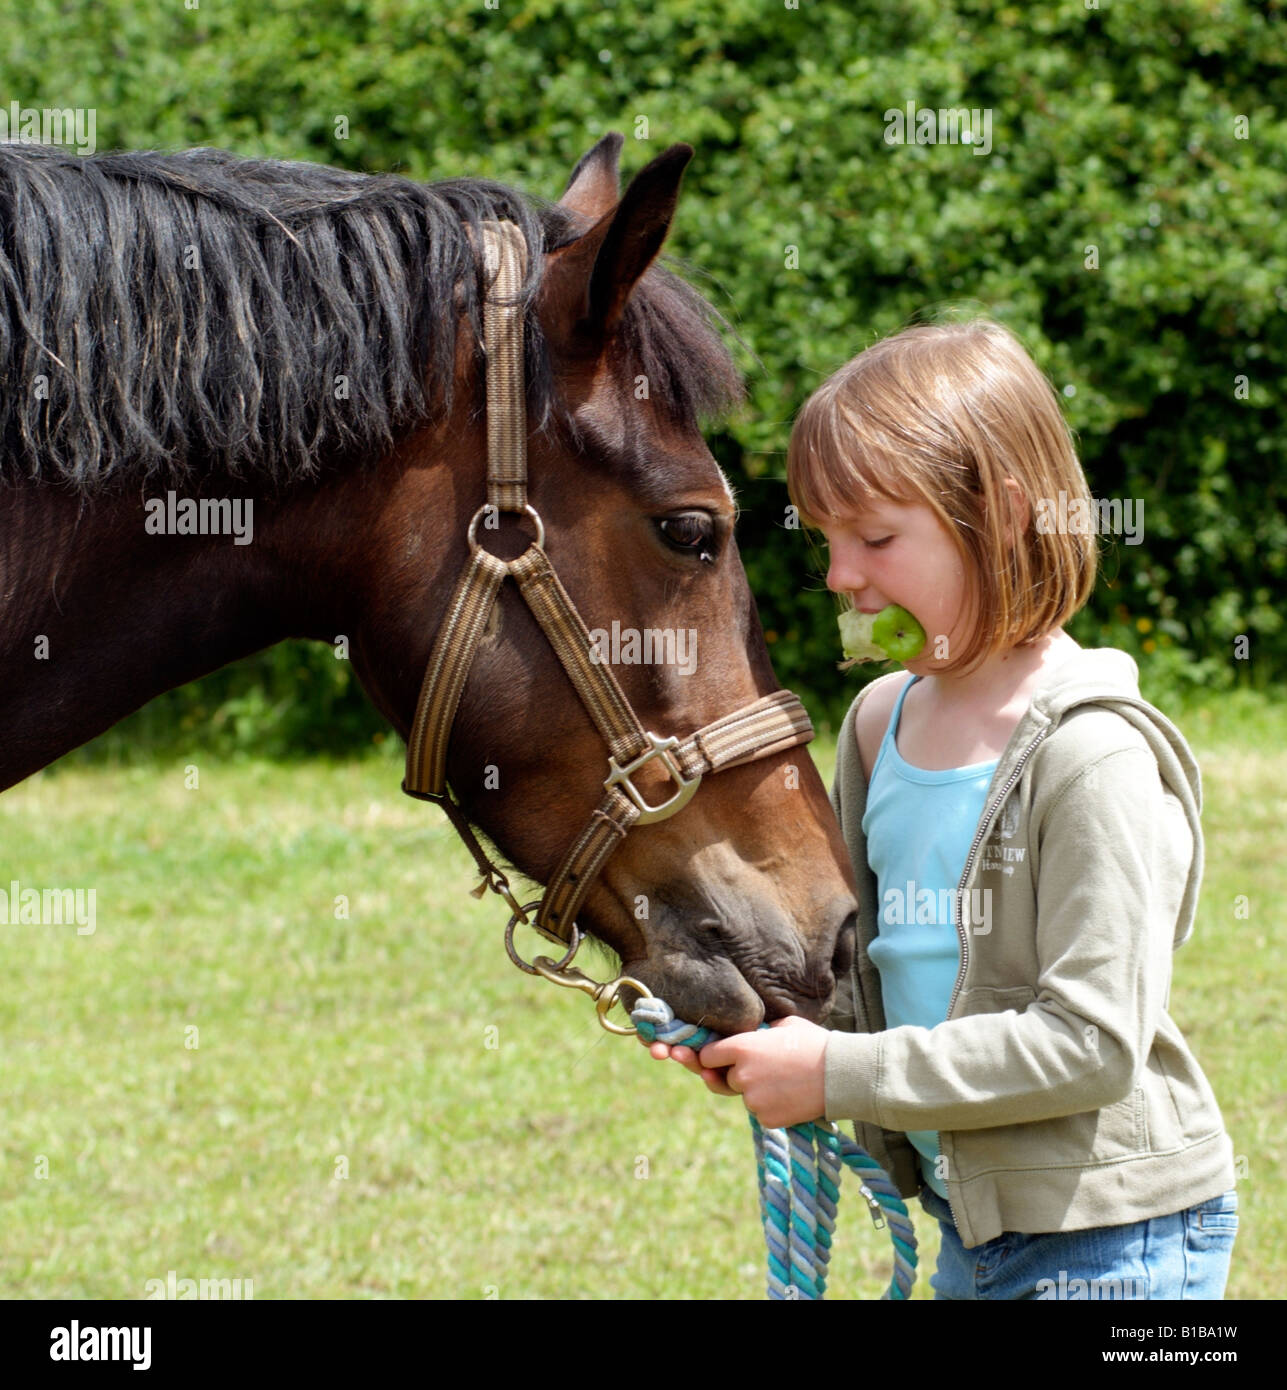 Petite fille avec une pomme dans sa bouche tenant son poney par le rein Banque D'Images